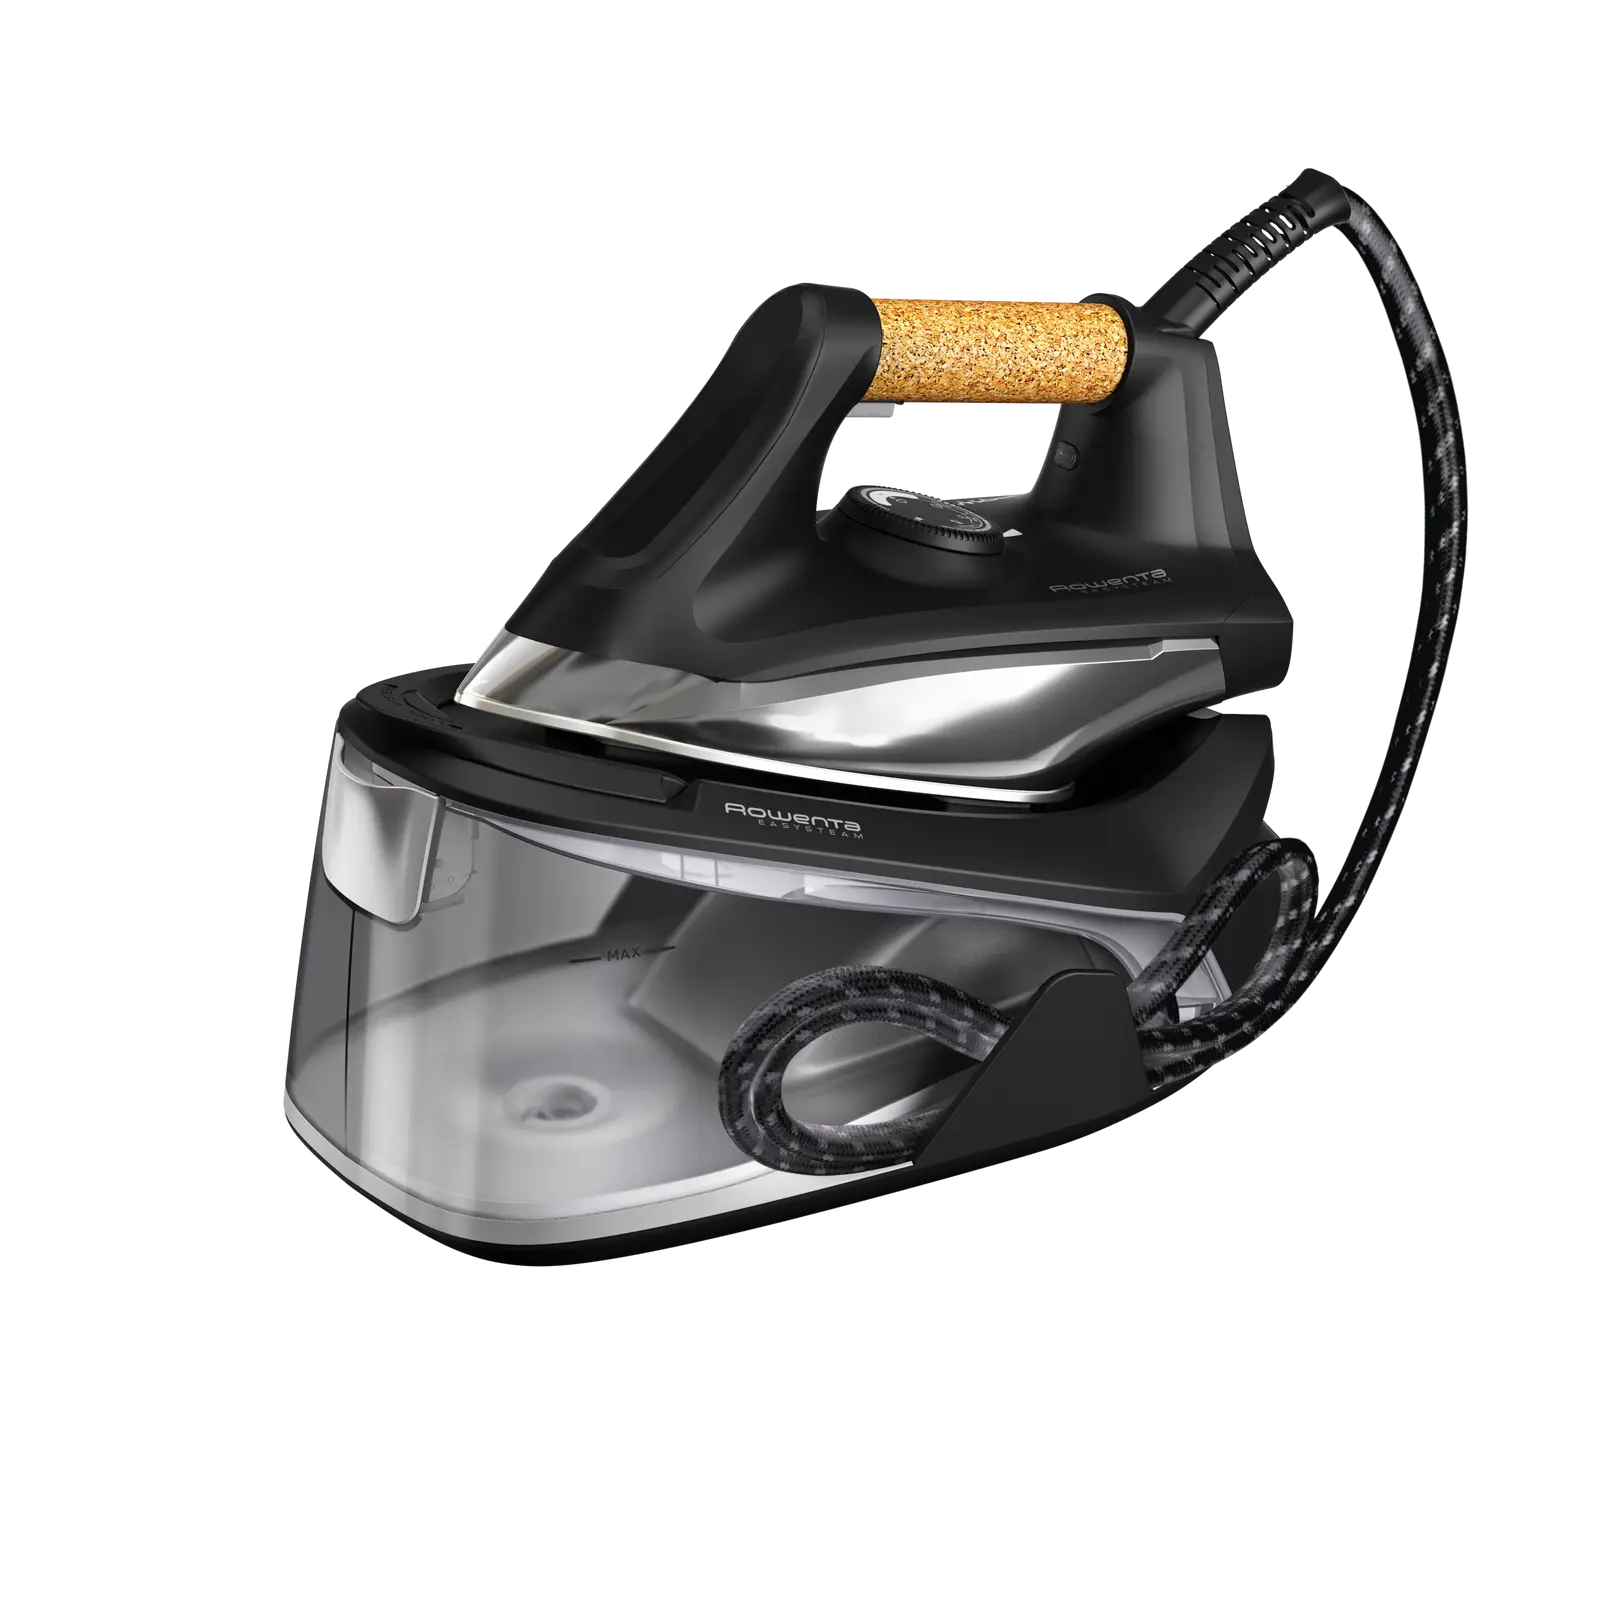 Ricambi e accessori Ferri da stiro Rowenta Easy Steam - VR7361F0